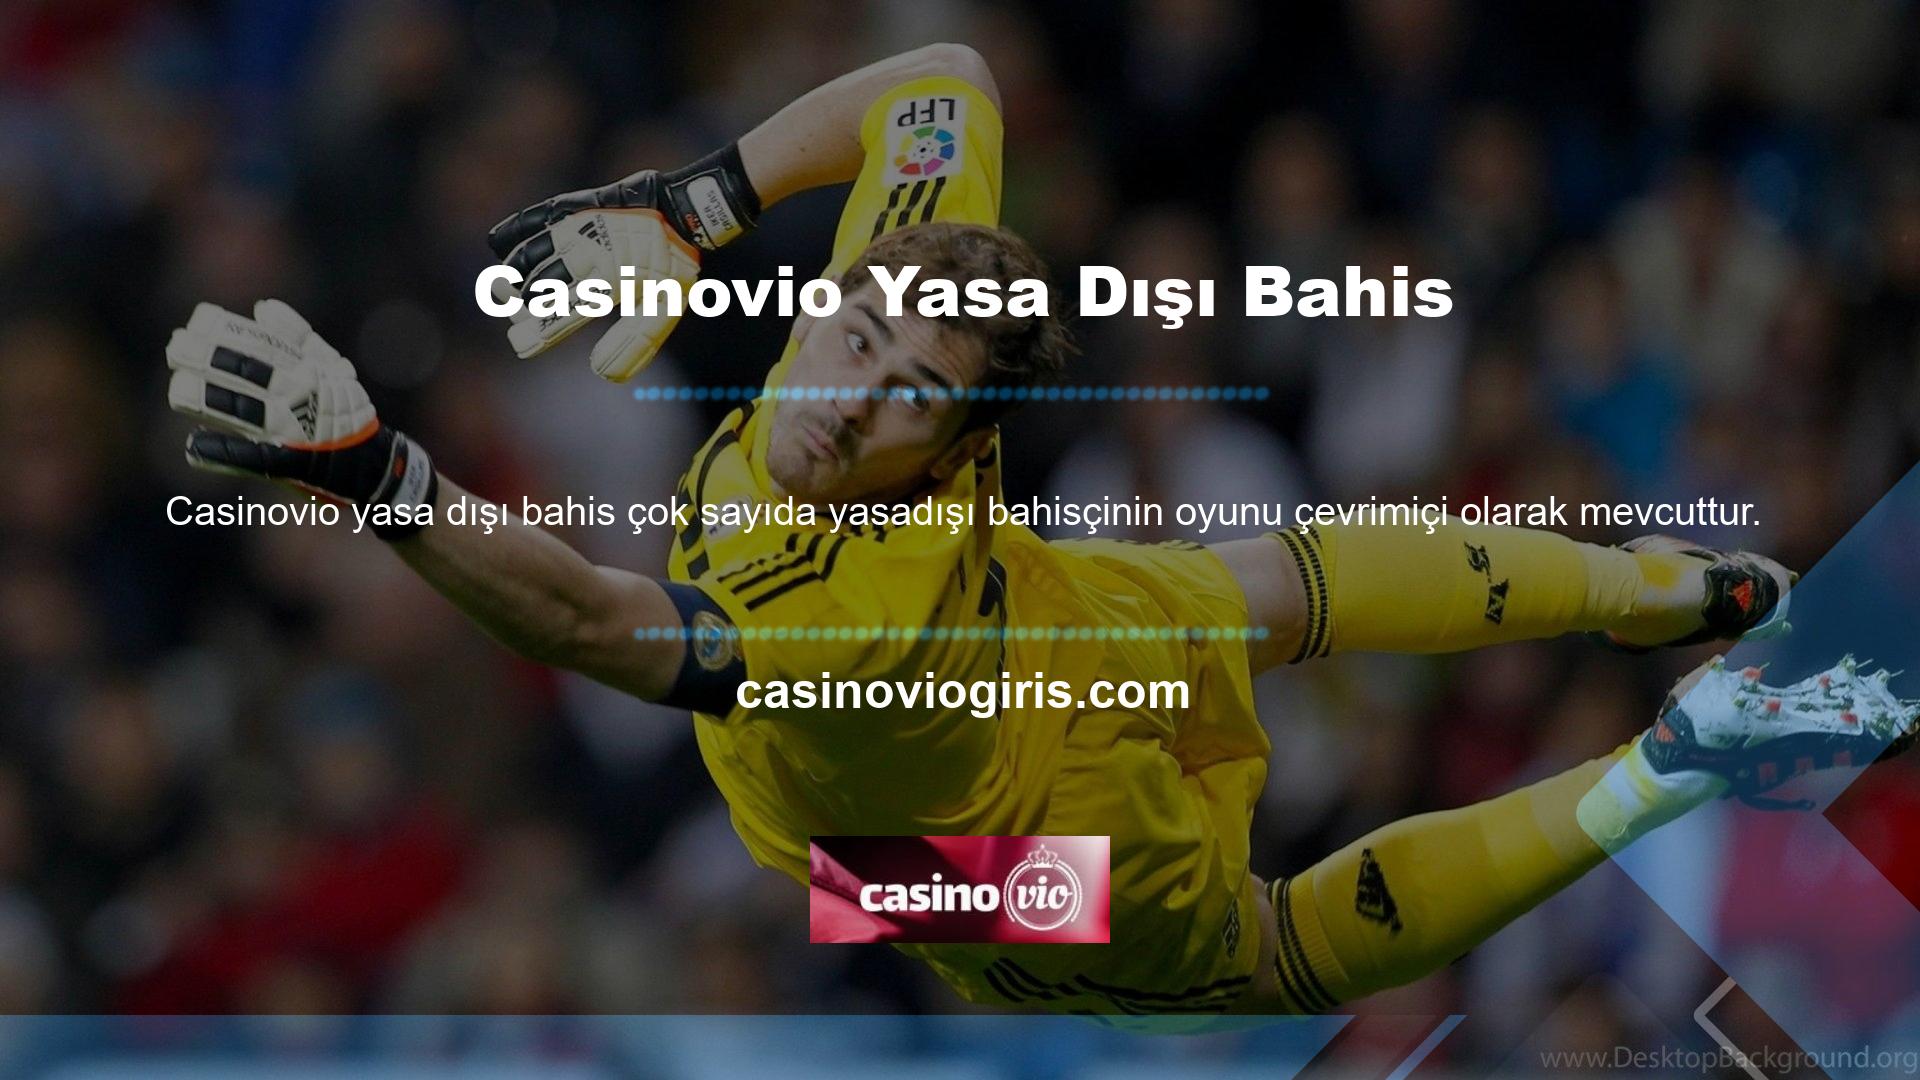 Casinovio web sitesi üyeleri için slot ve pokerin yanı sıra bingo da dahil olmak üzere oyunlar yarattı